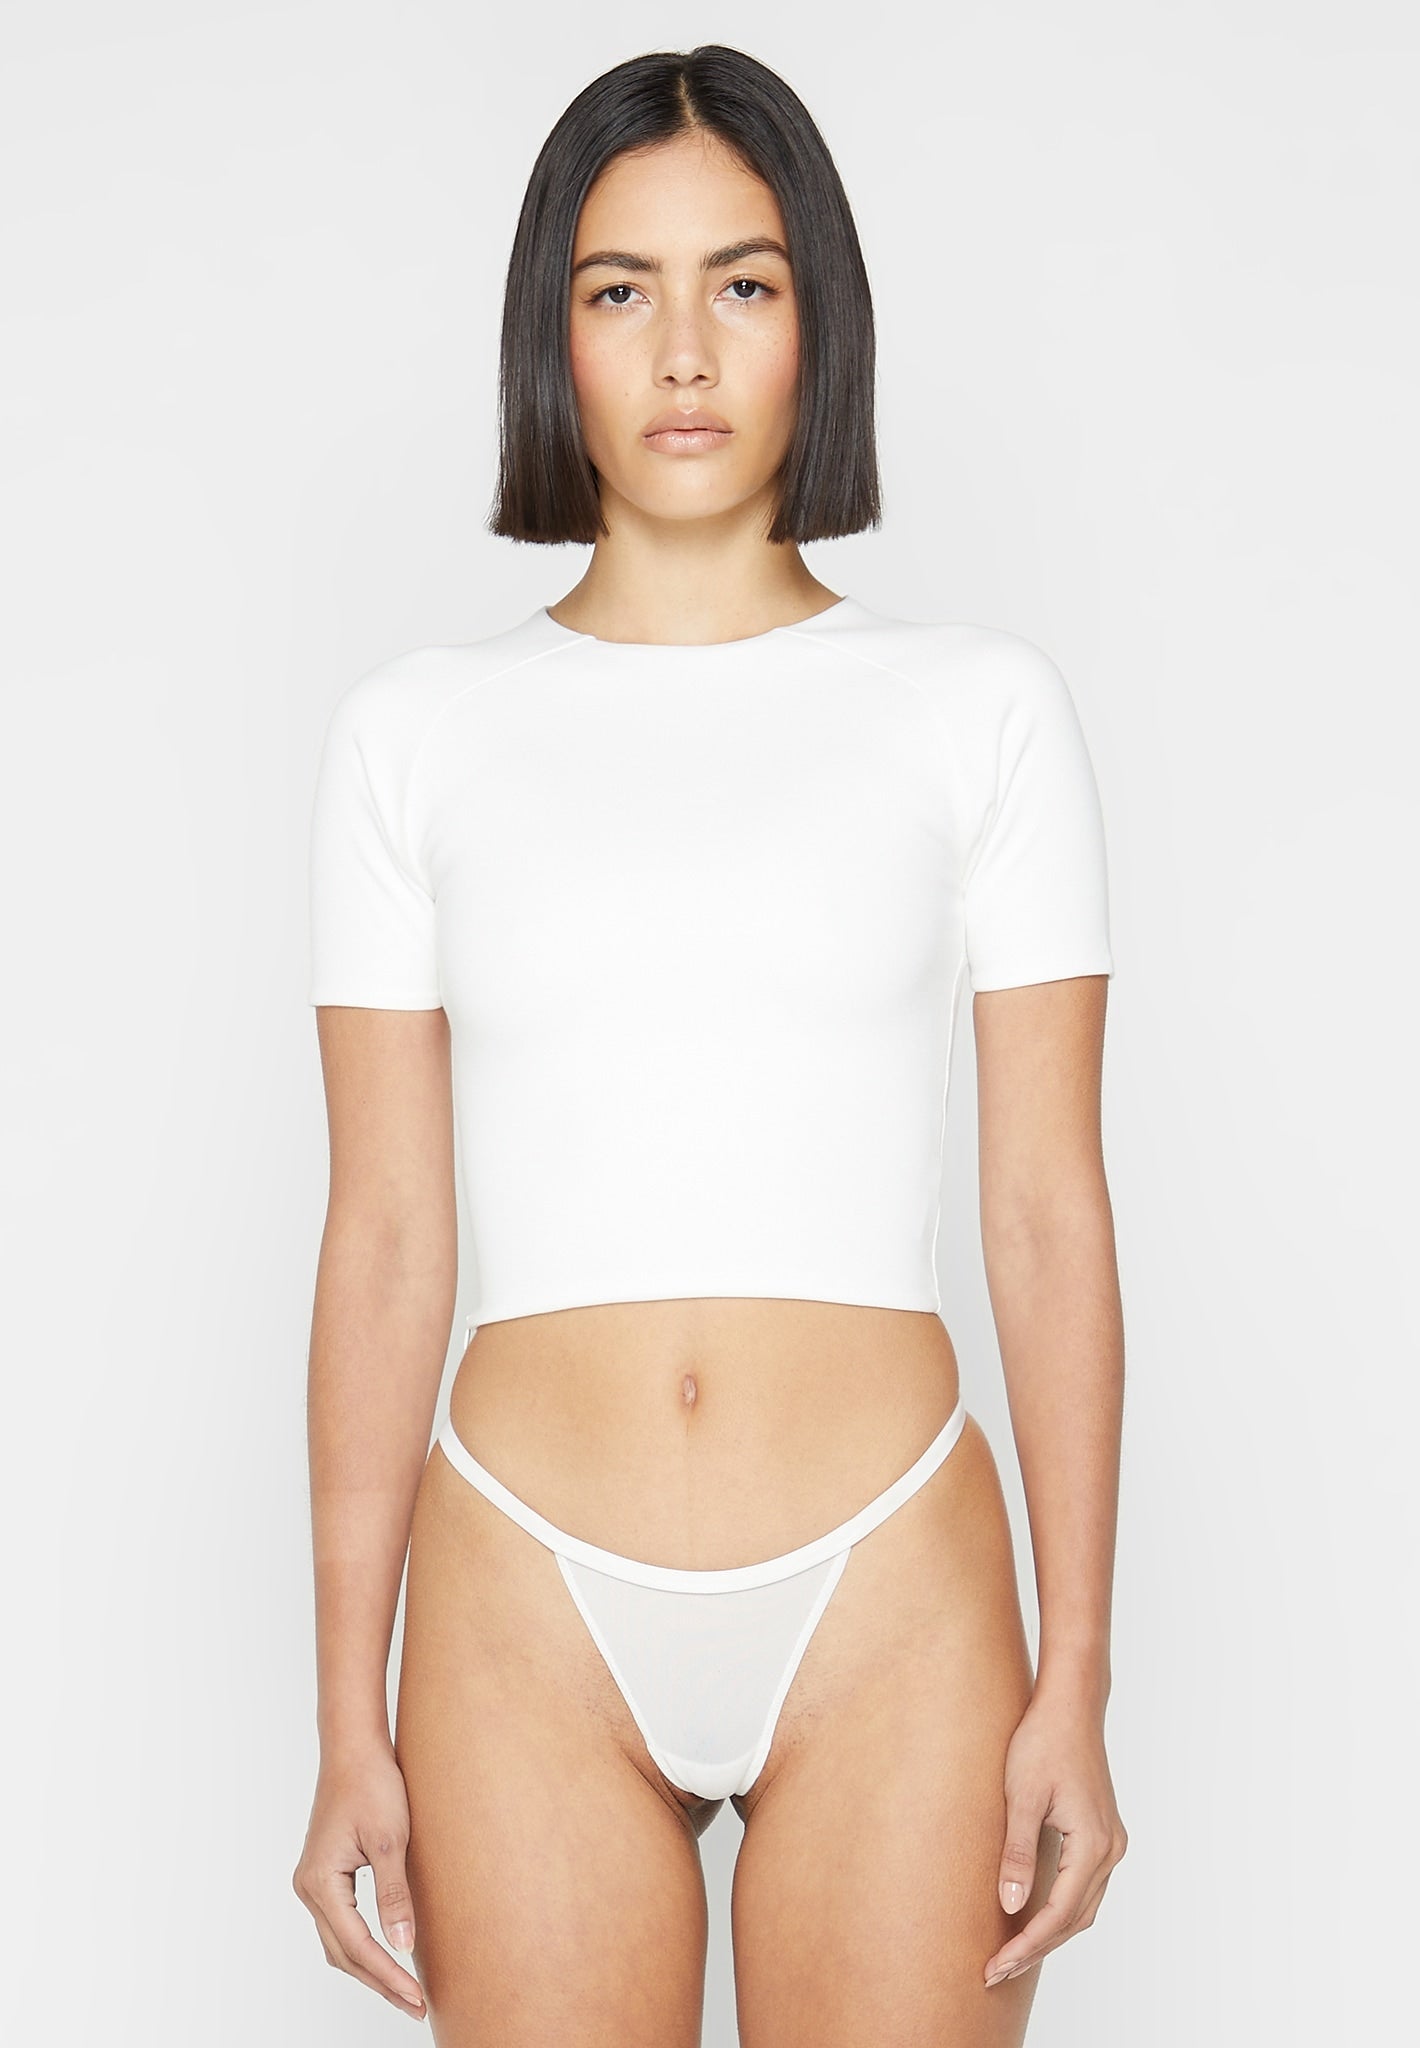 eternelle-short-sleeve-t-shirt-off-white